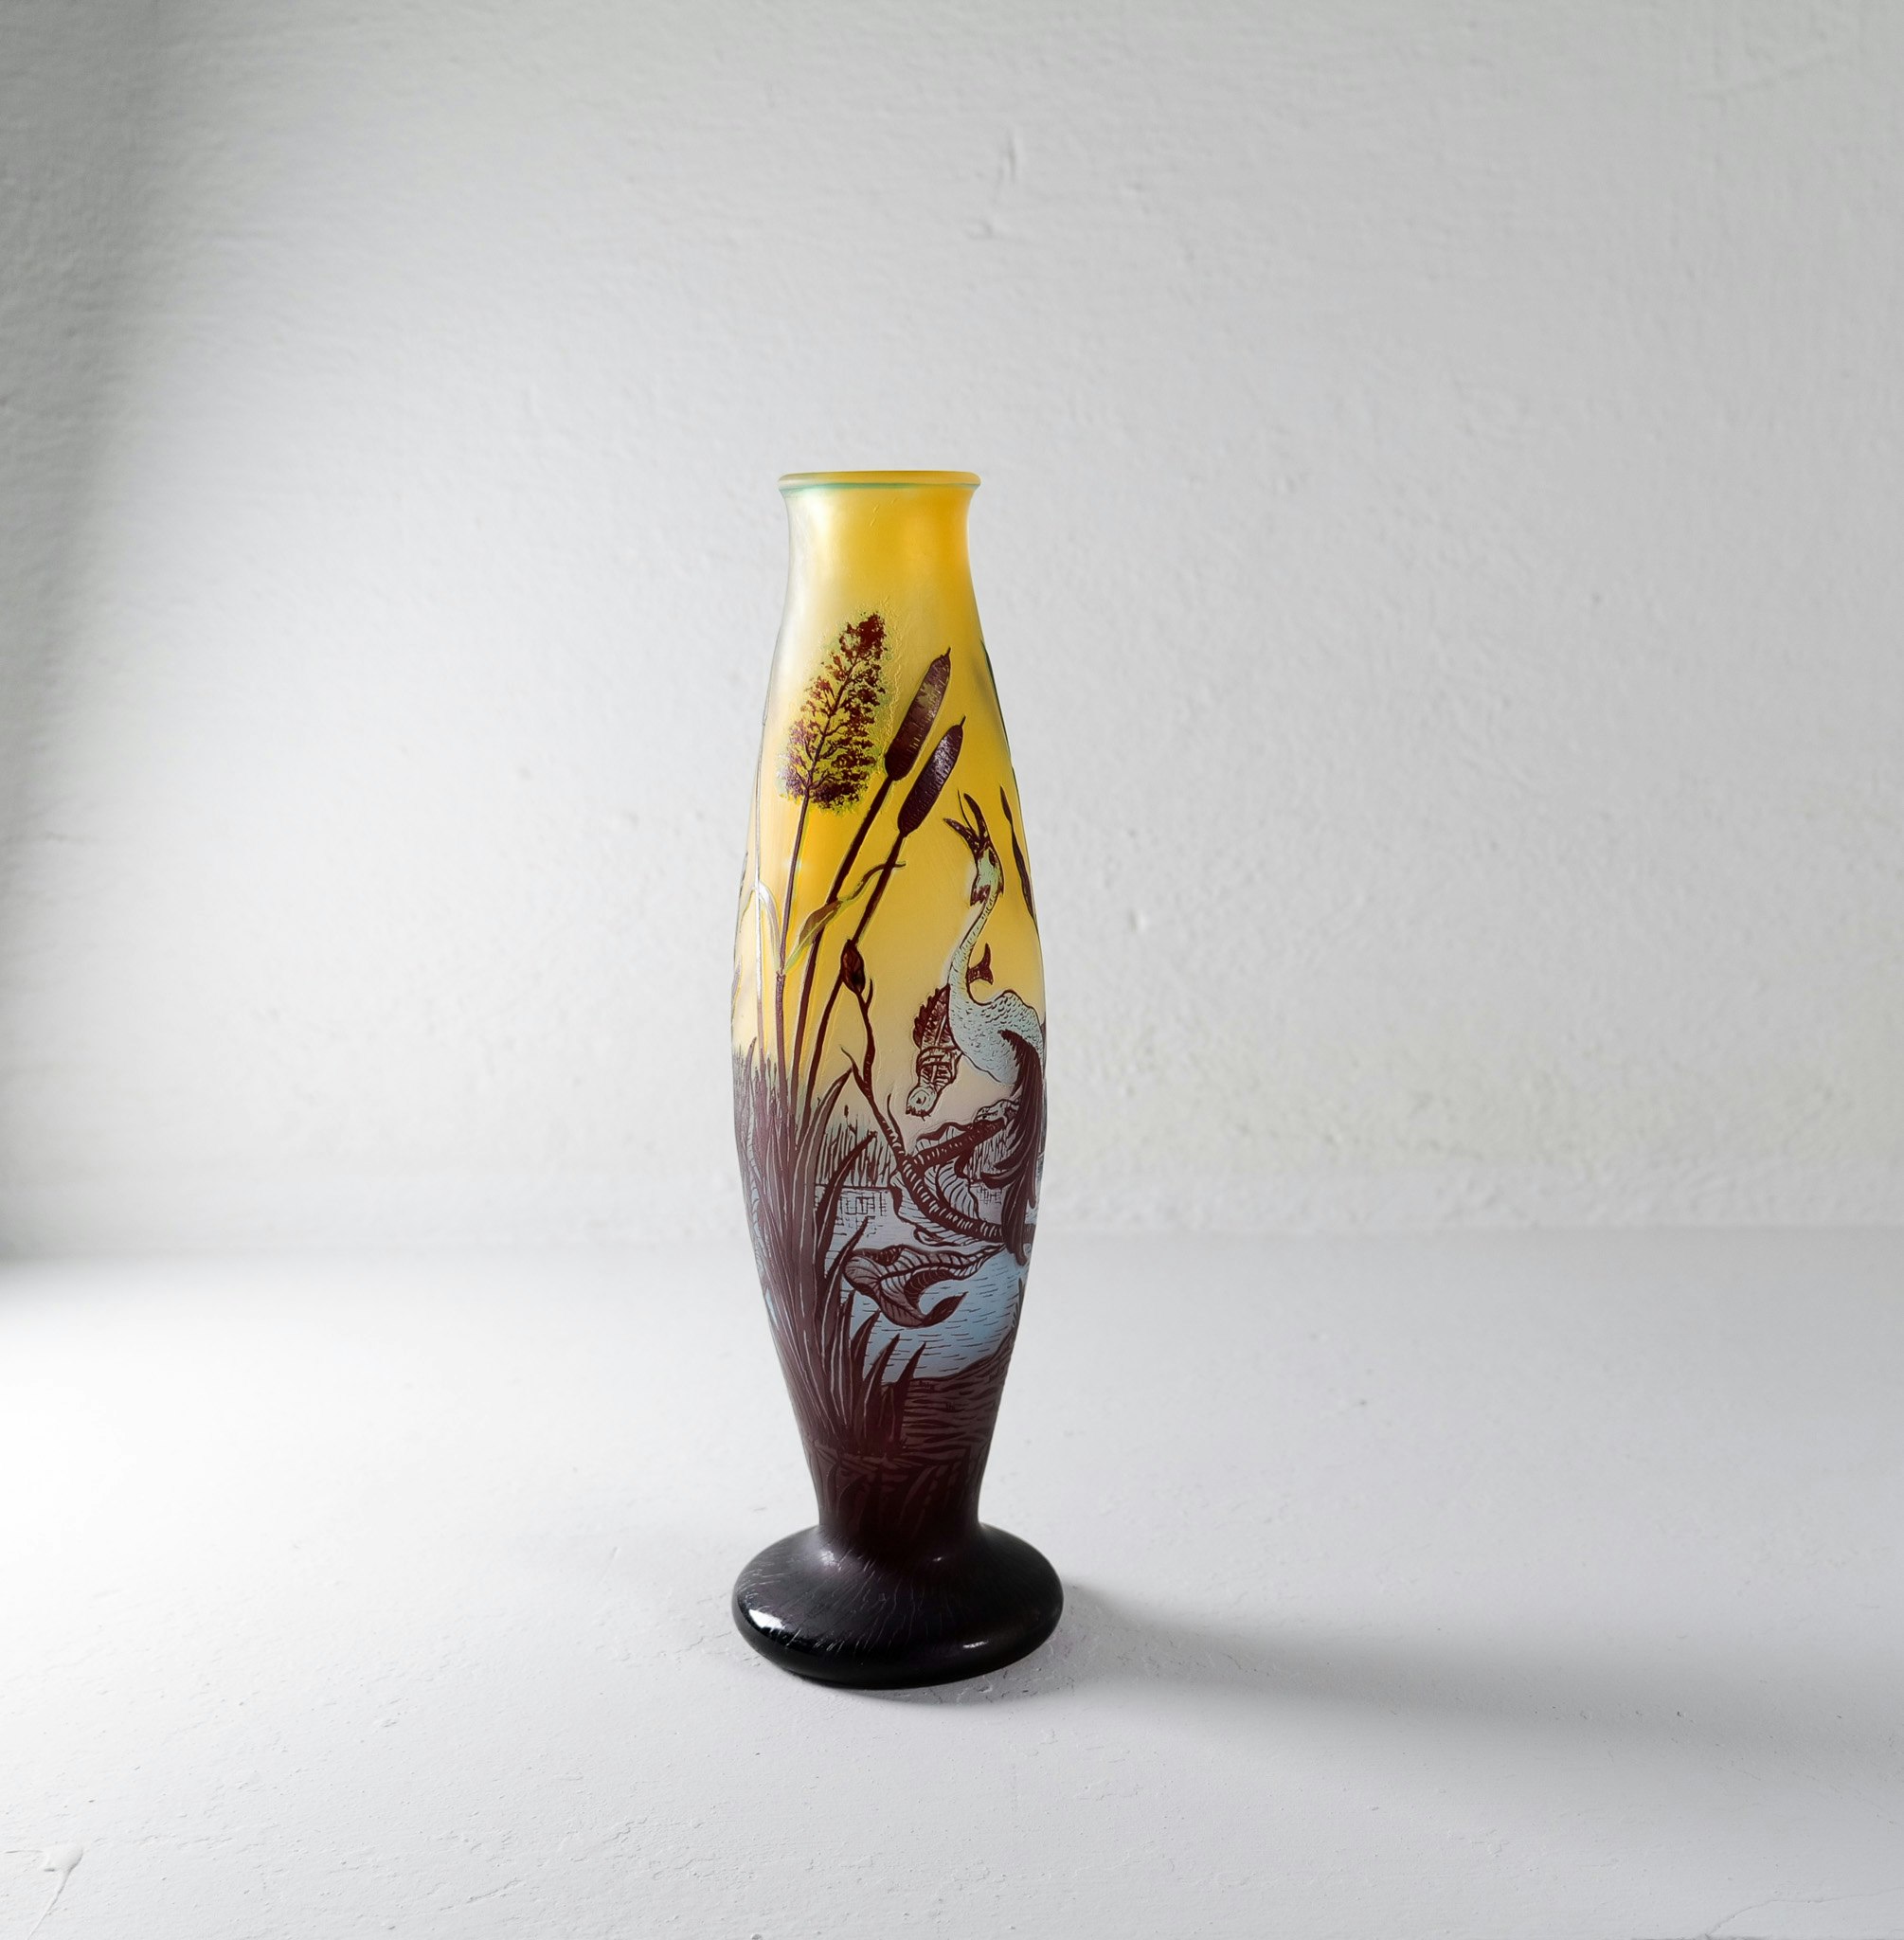 Art Nouveau Decorative Unique Carved Glass Vase Sweden 1900s